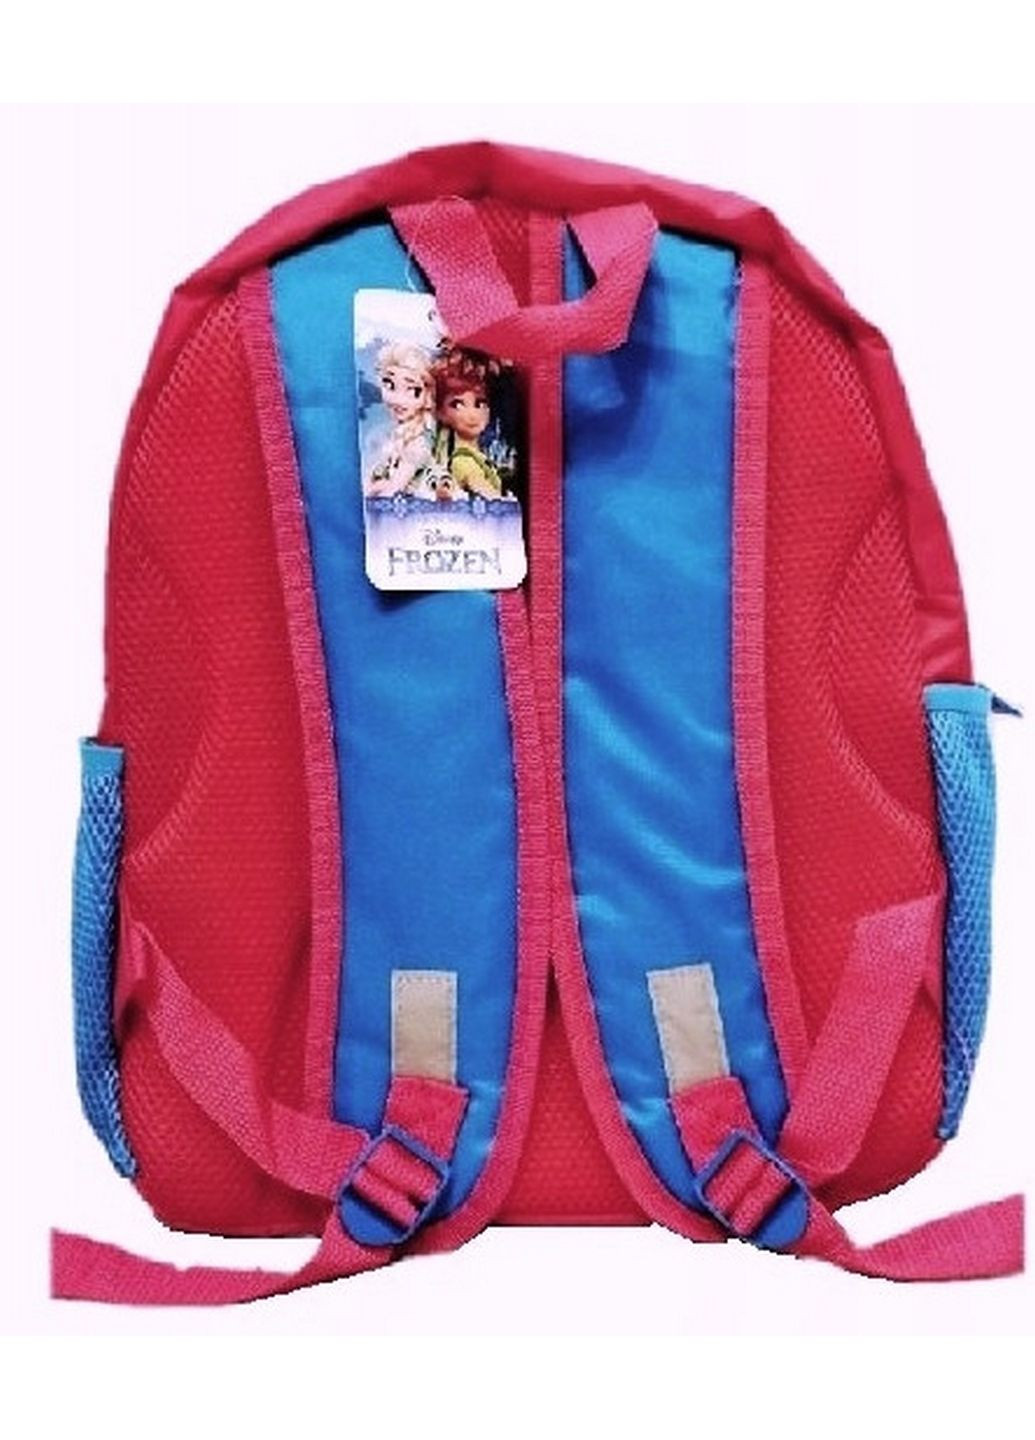 Шкільний рюкзак для дівчинки Frozen Anna & Elsa Paso (279316252)